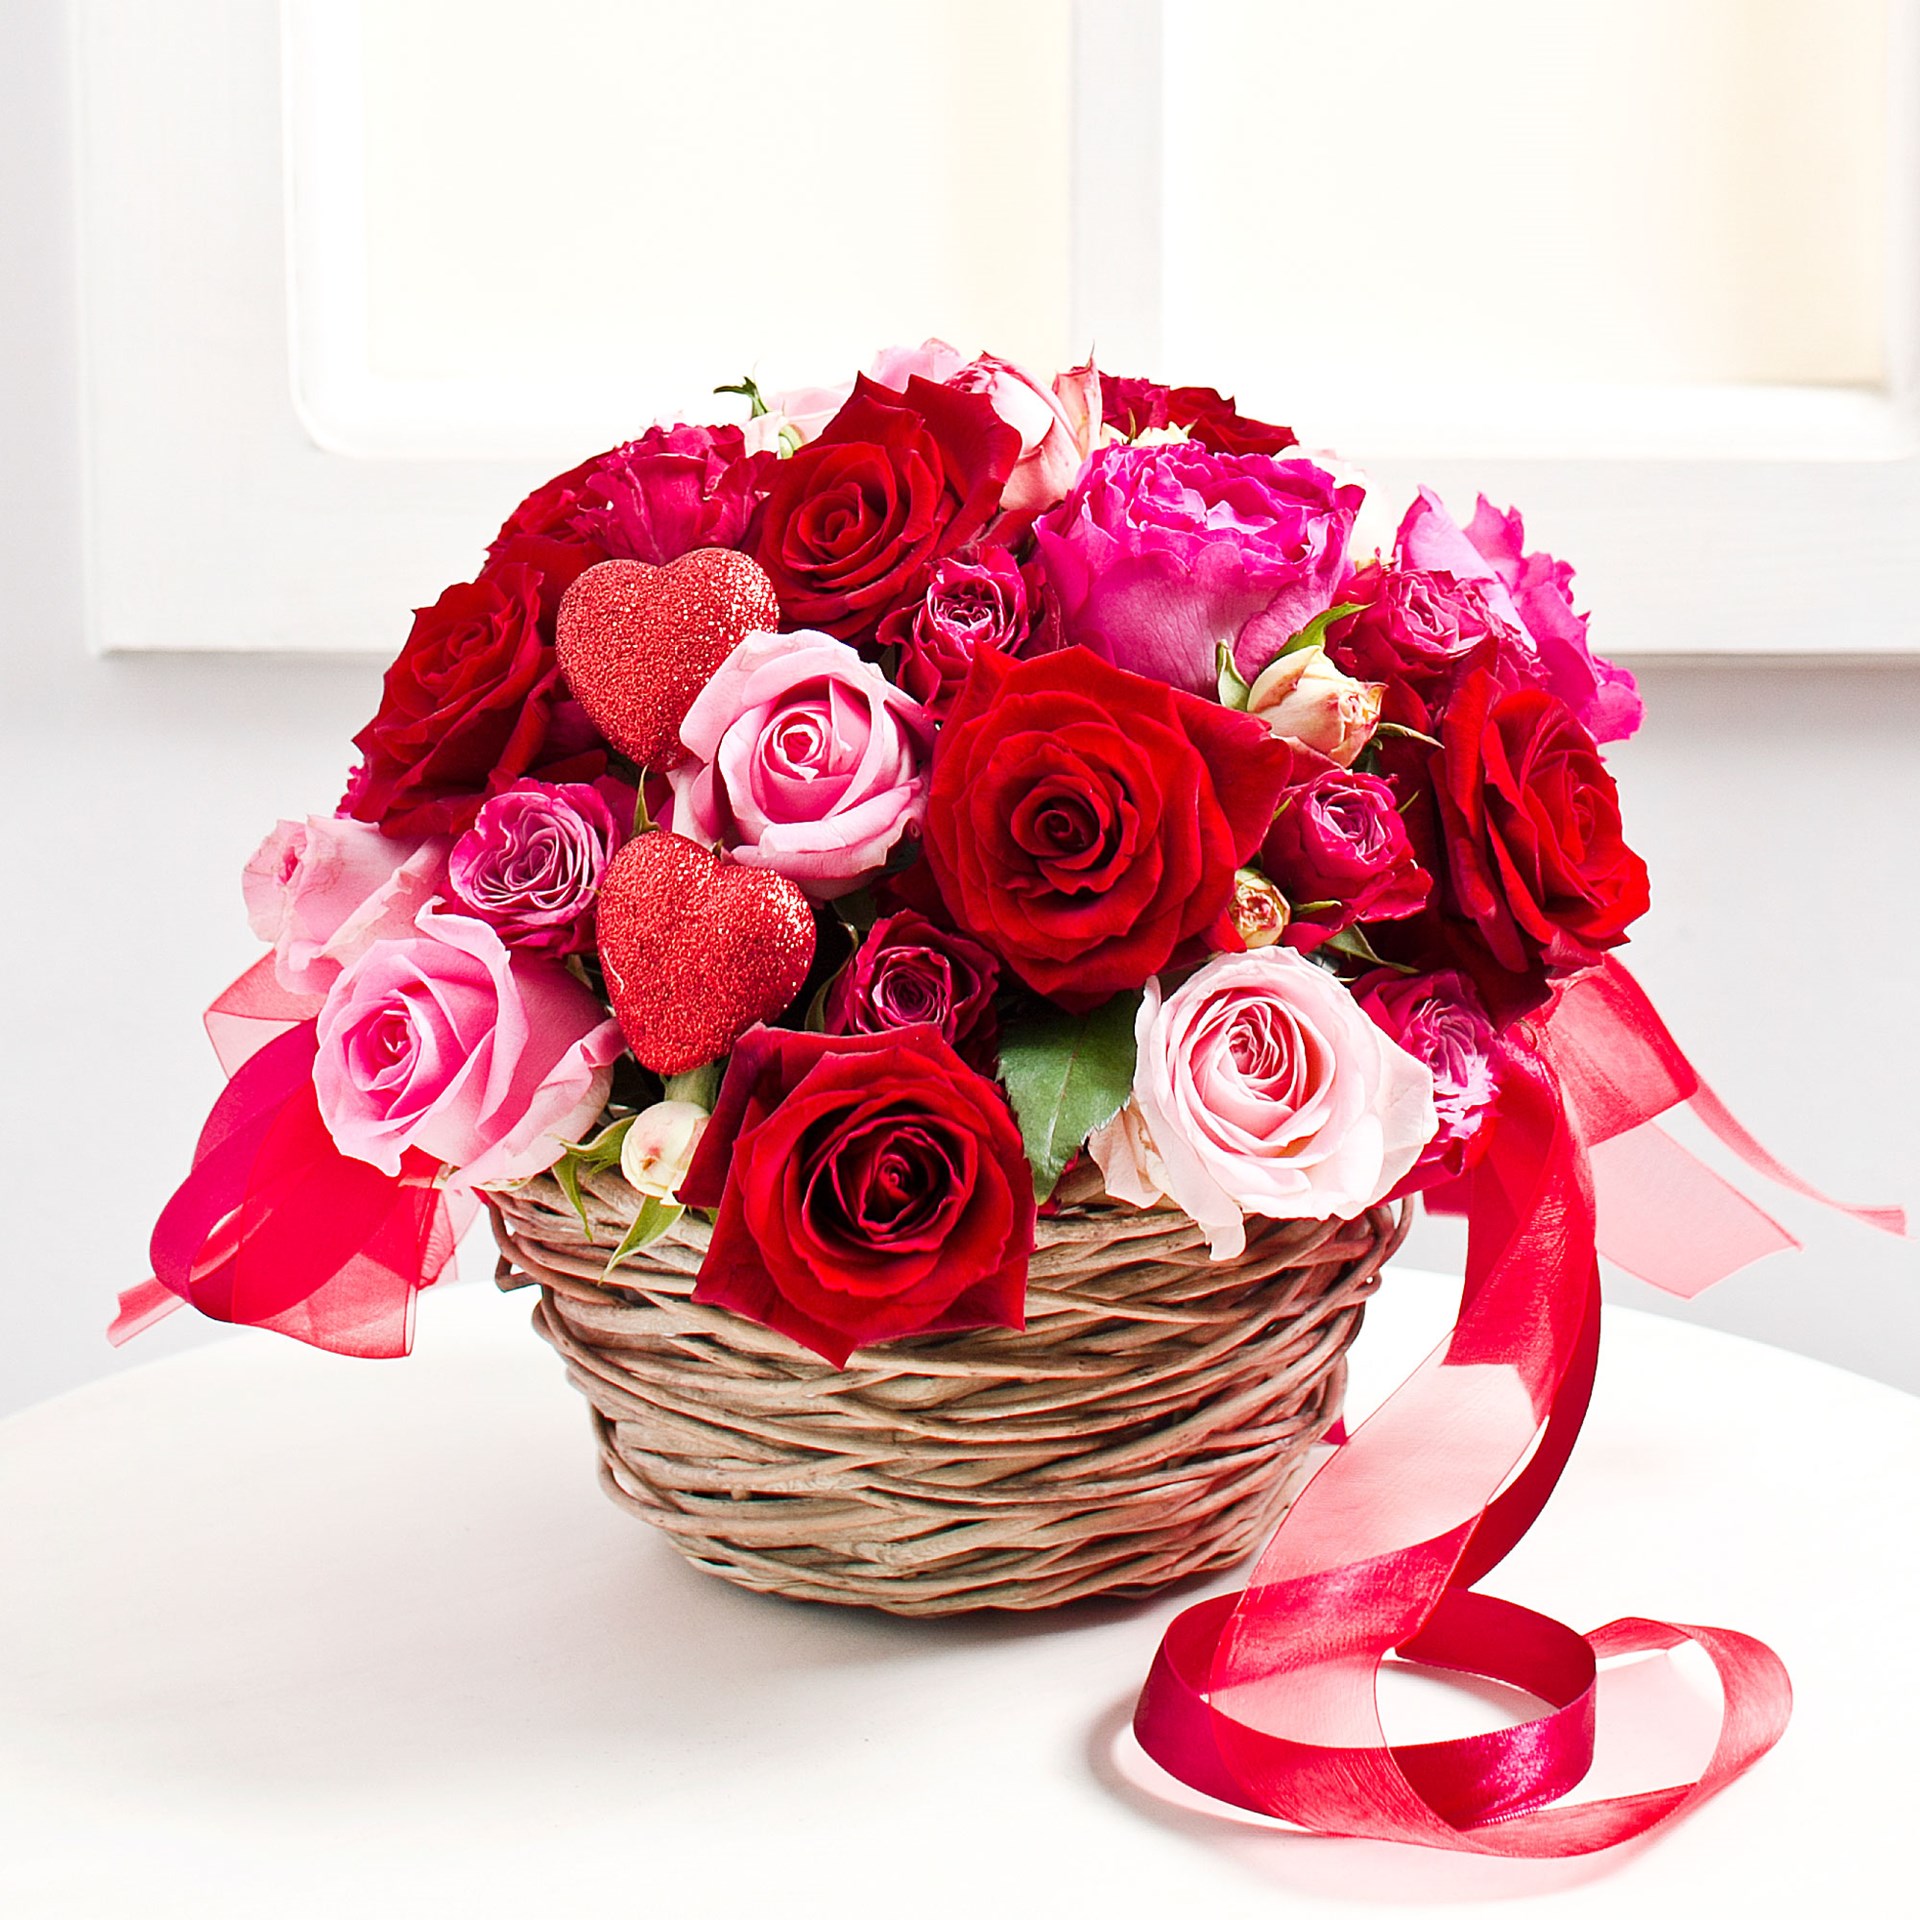 product image for Romantical Flower Arrangement